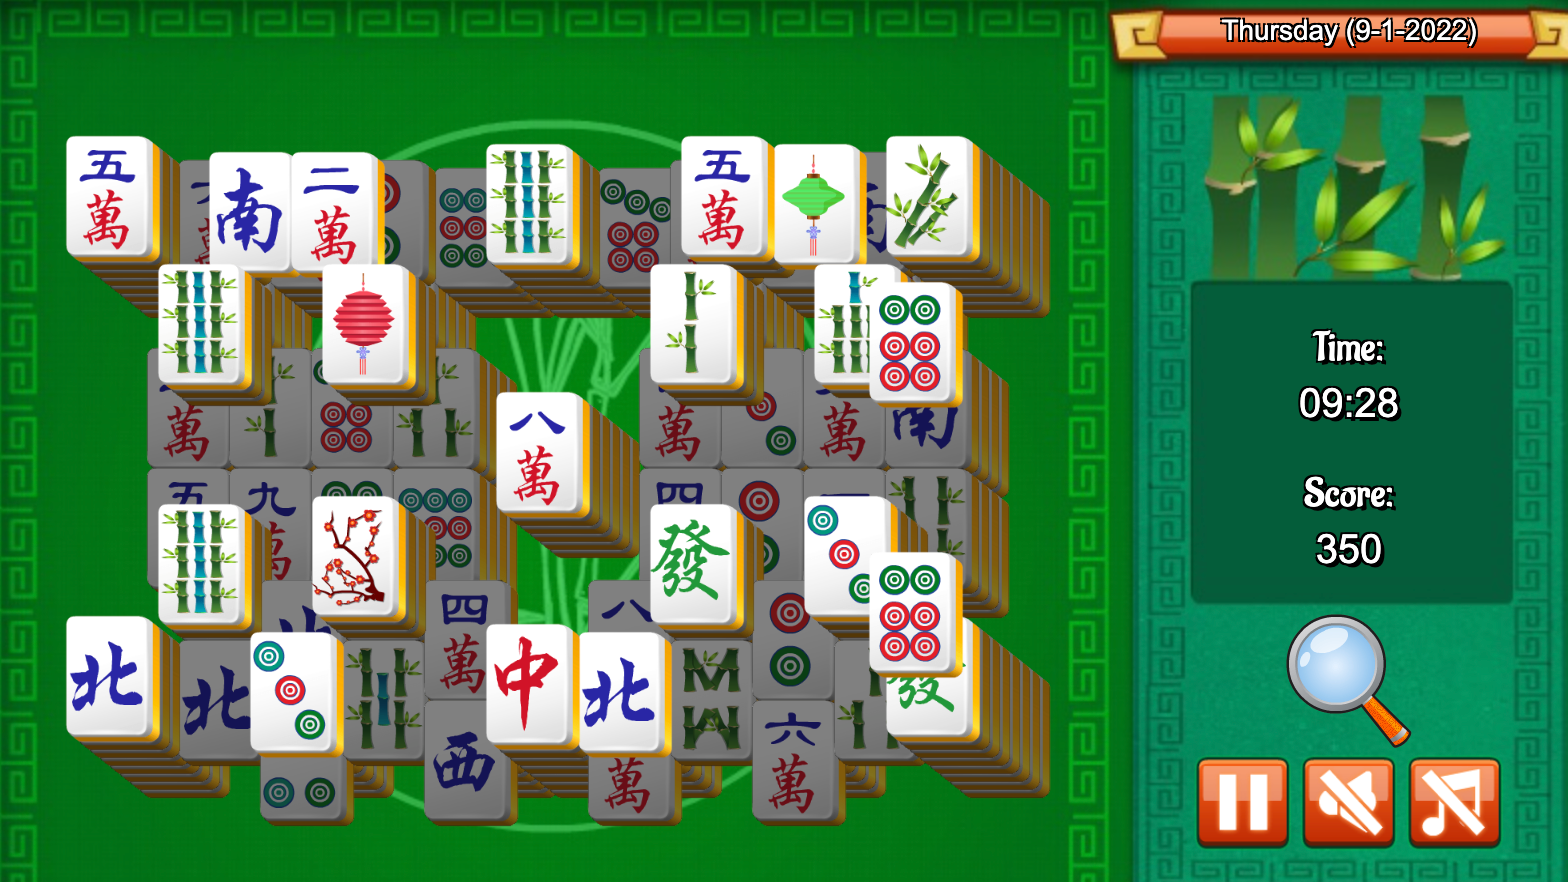 Jogue Mahjong Online 100% Grátis + 5 Dicas para Ganhar, novembro